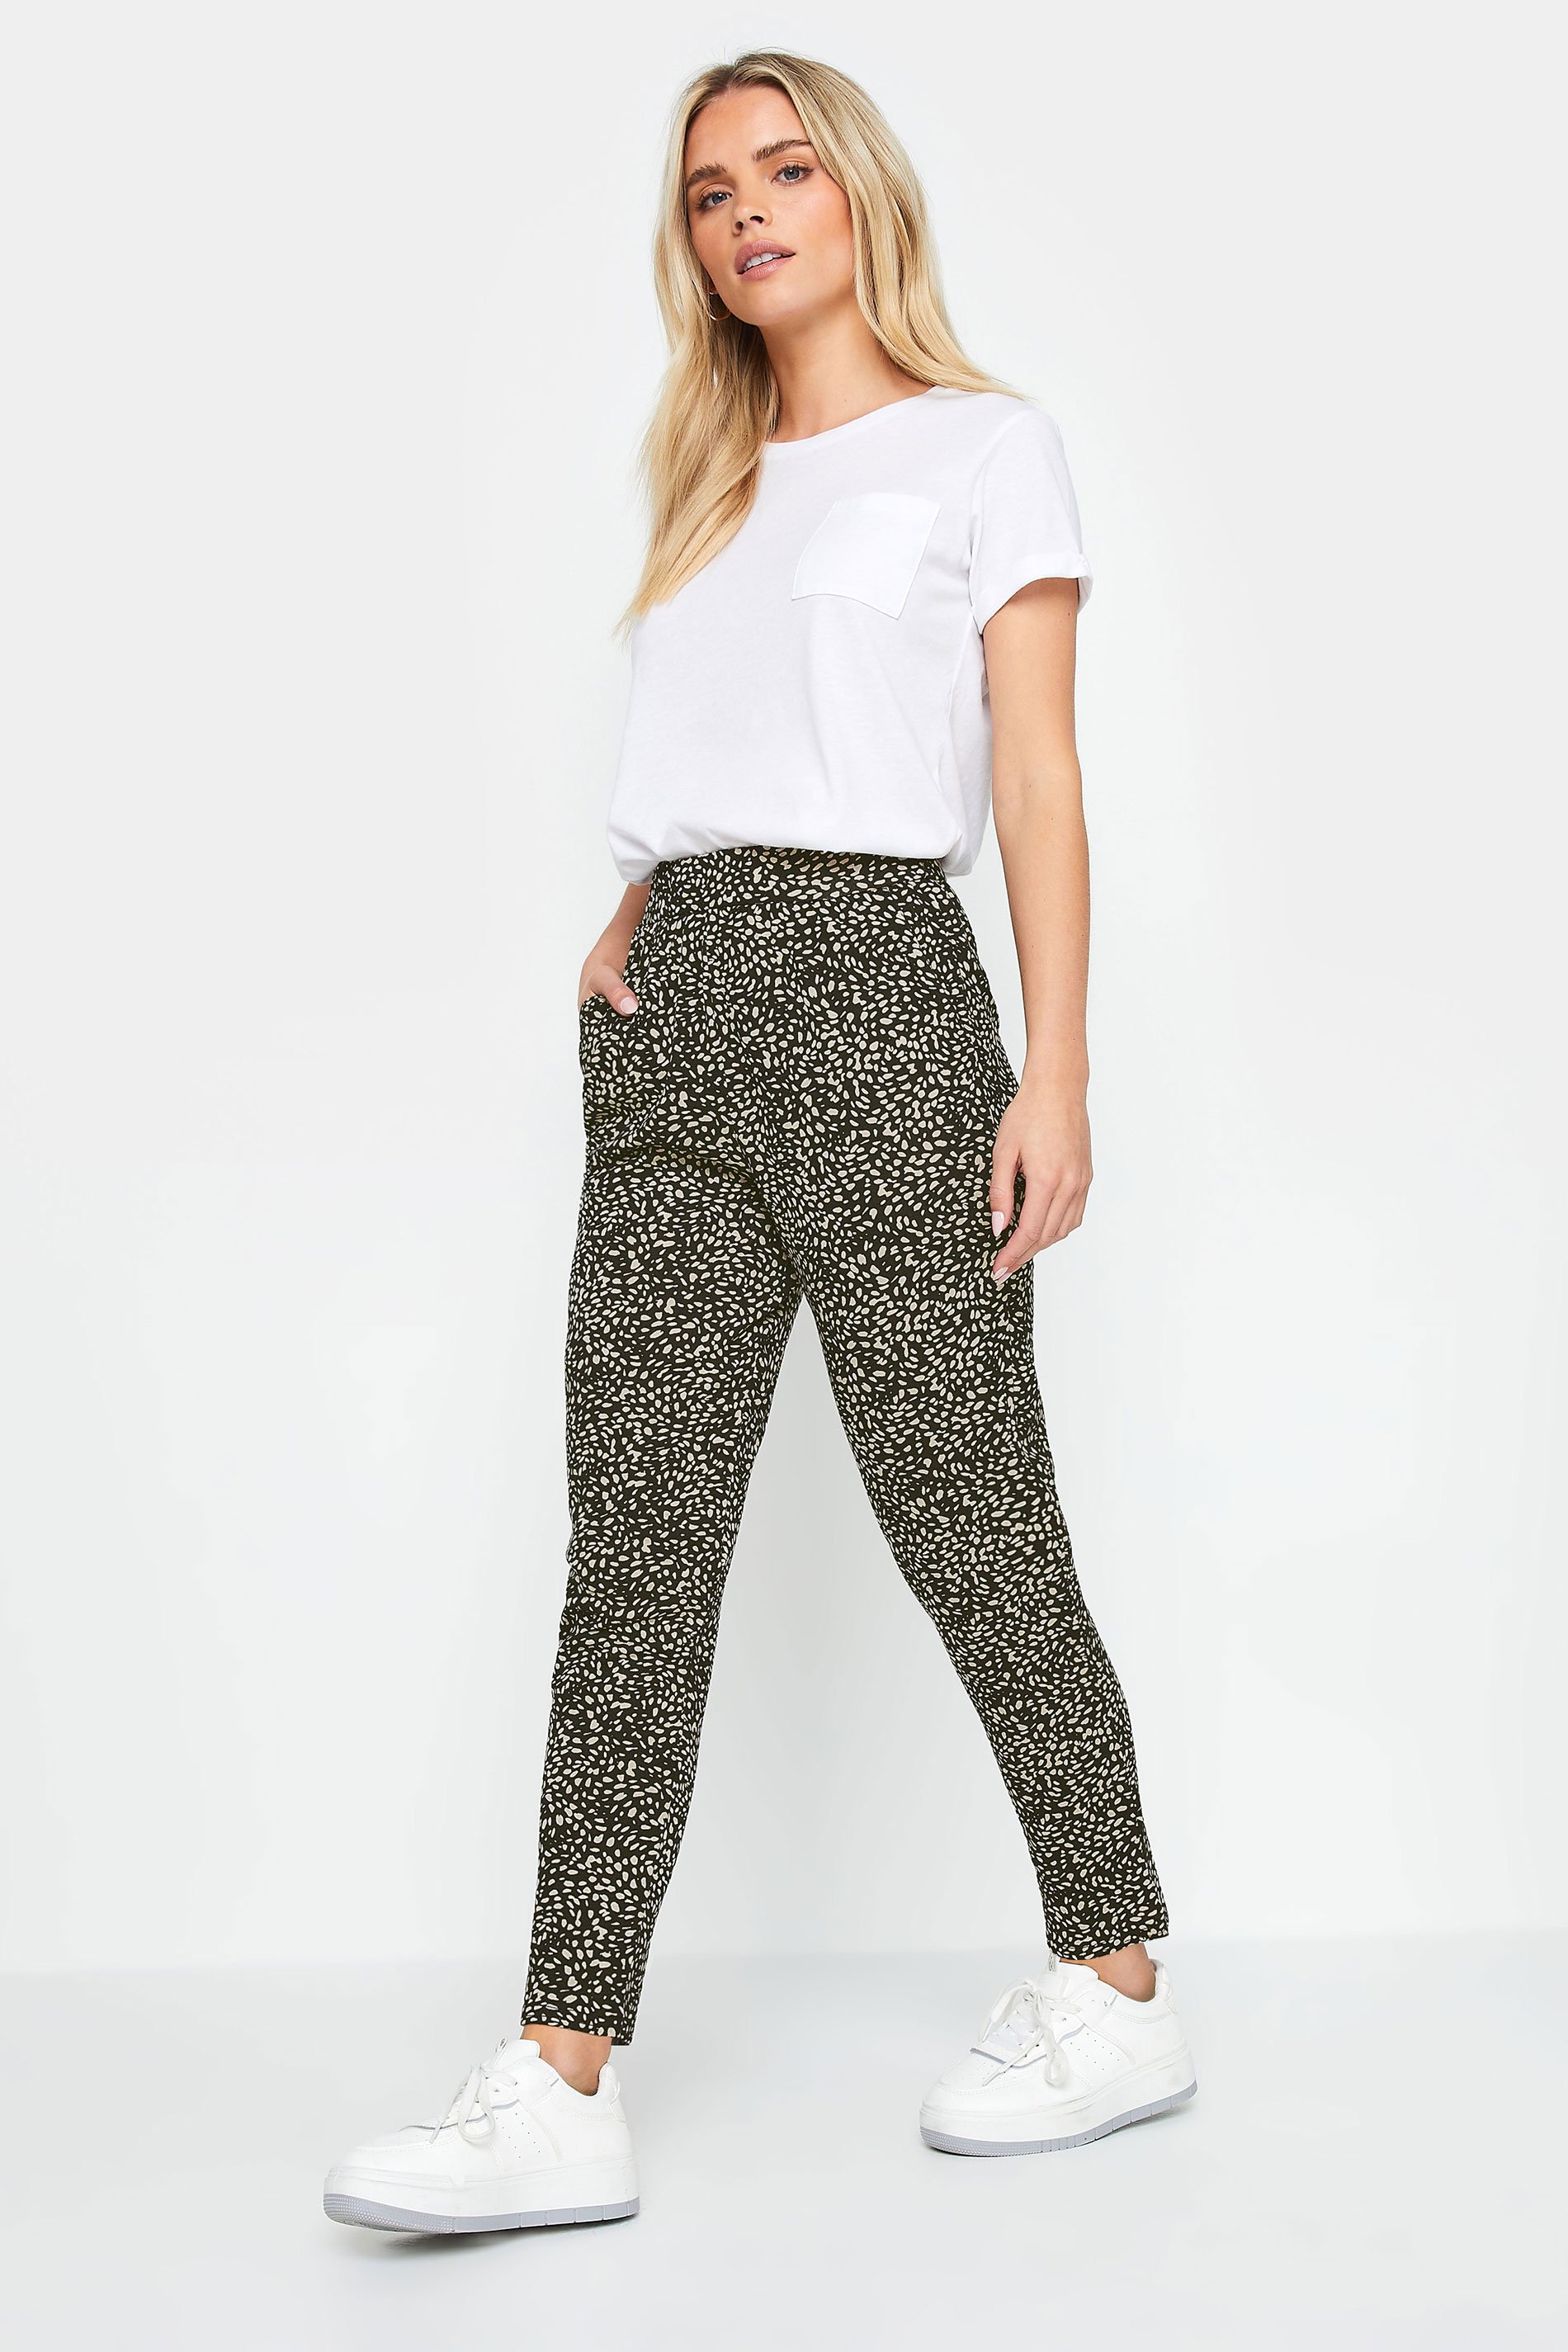 M&Co Petite Natural & Black Spot Print Harem Trousers | M&Co 2